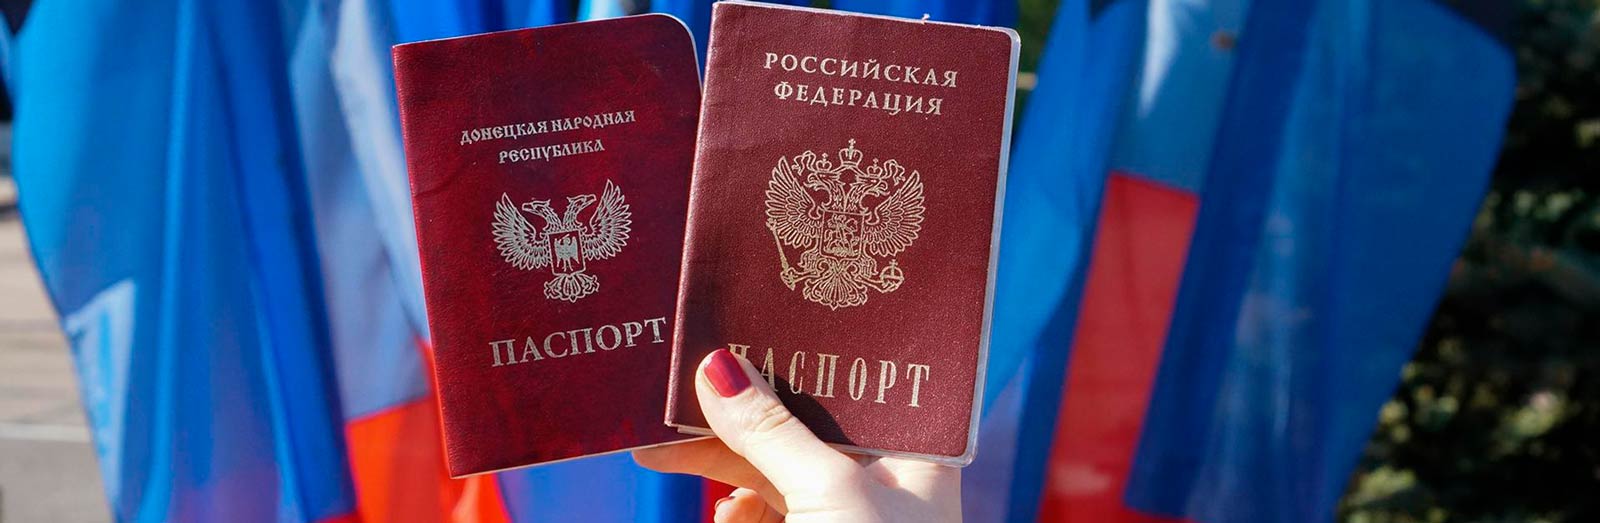 Паспортизація по-російськи: як це вплине на перспективи повернення окупованого Донбасу